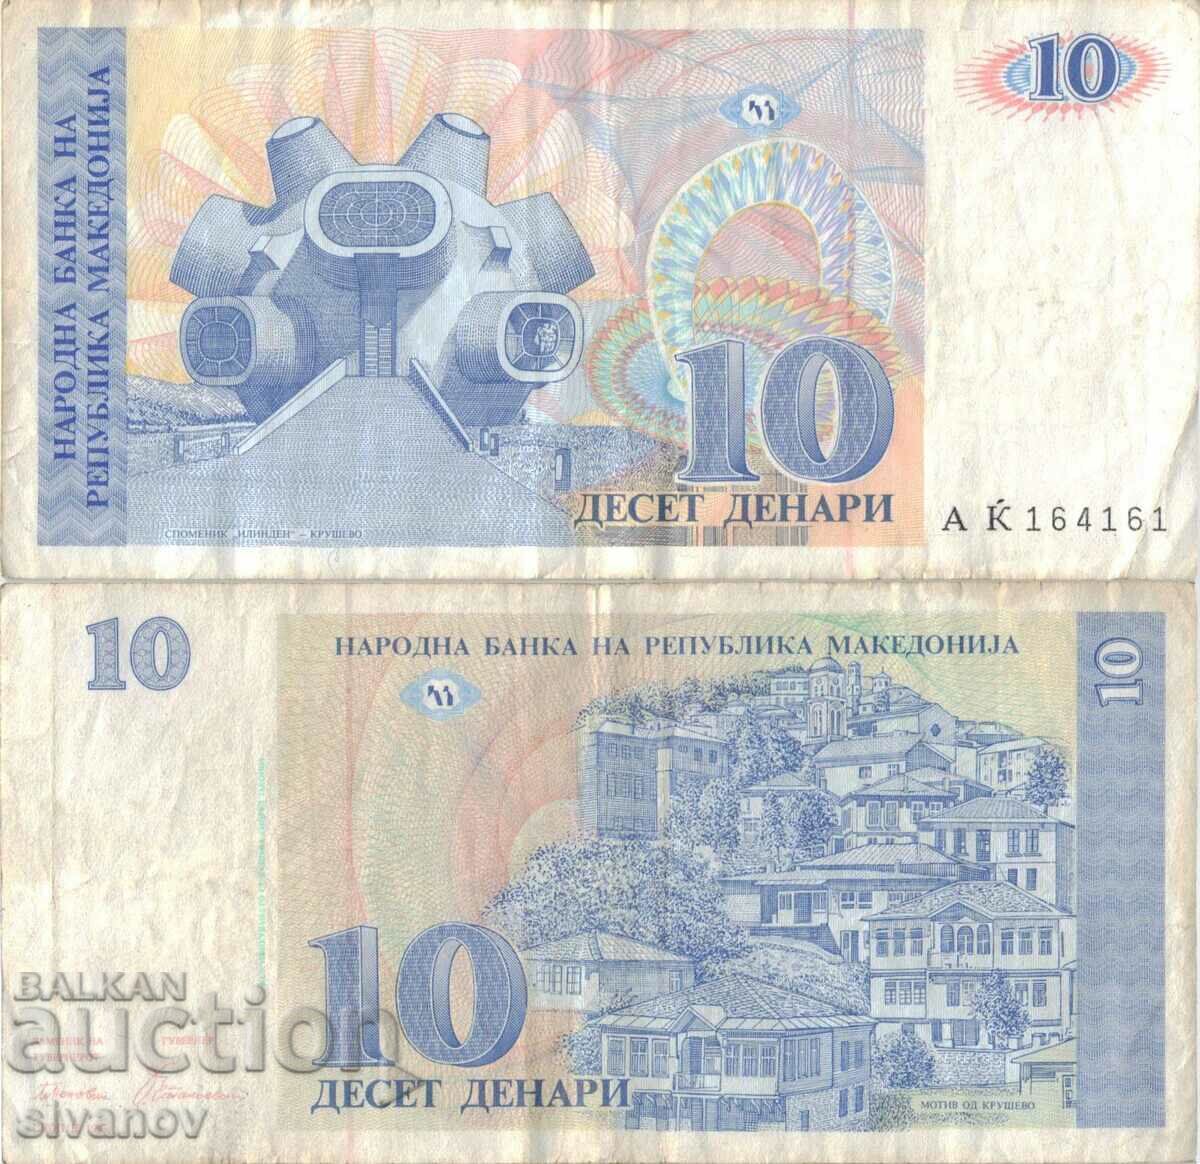 Macedonia 10 denari 1993 bancnota #5214